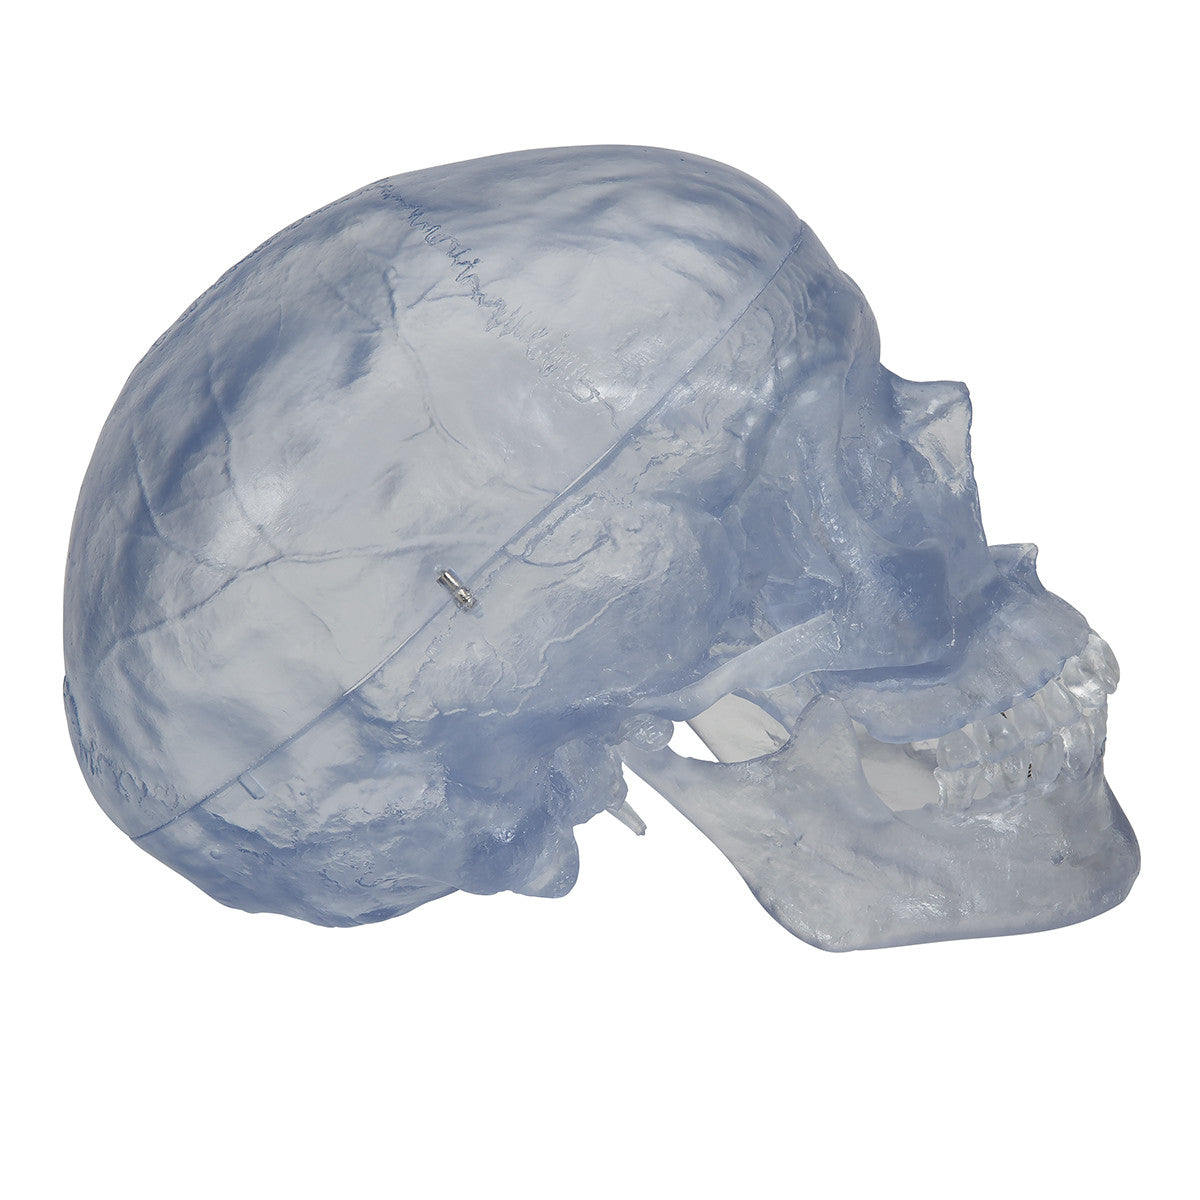 Artificial, Transparent Skull Model, 3 part | 3B Scientific A20/T